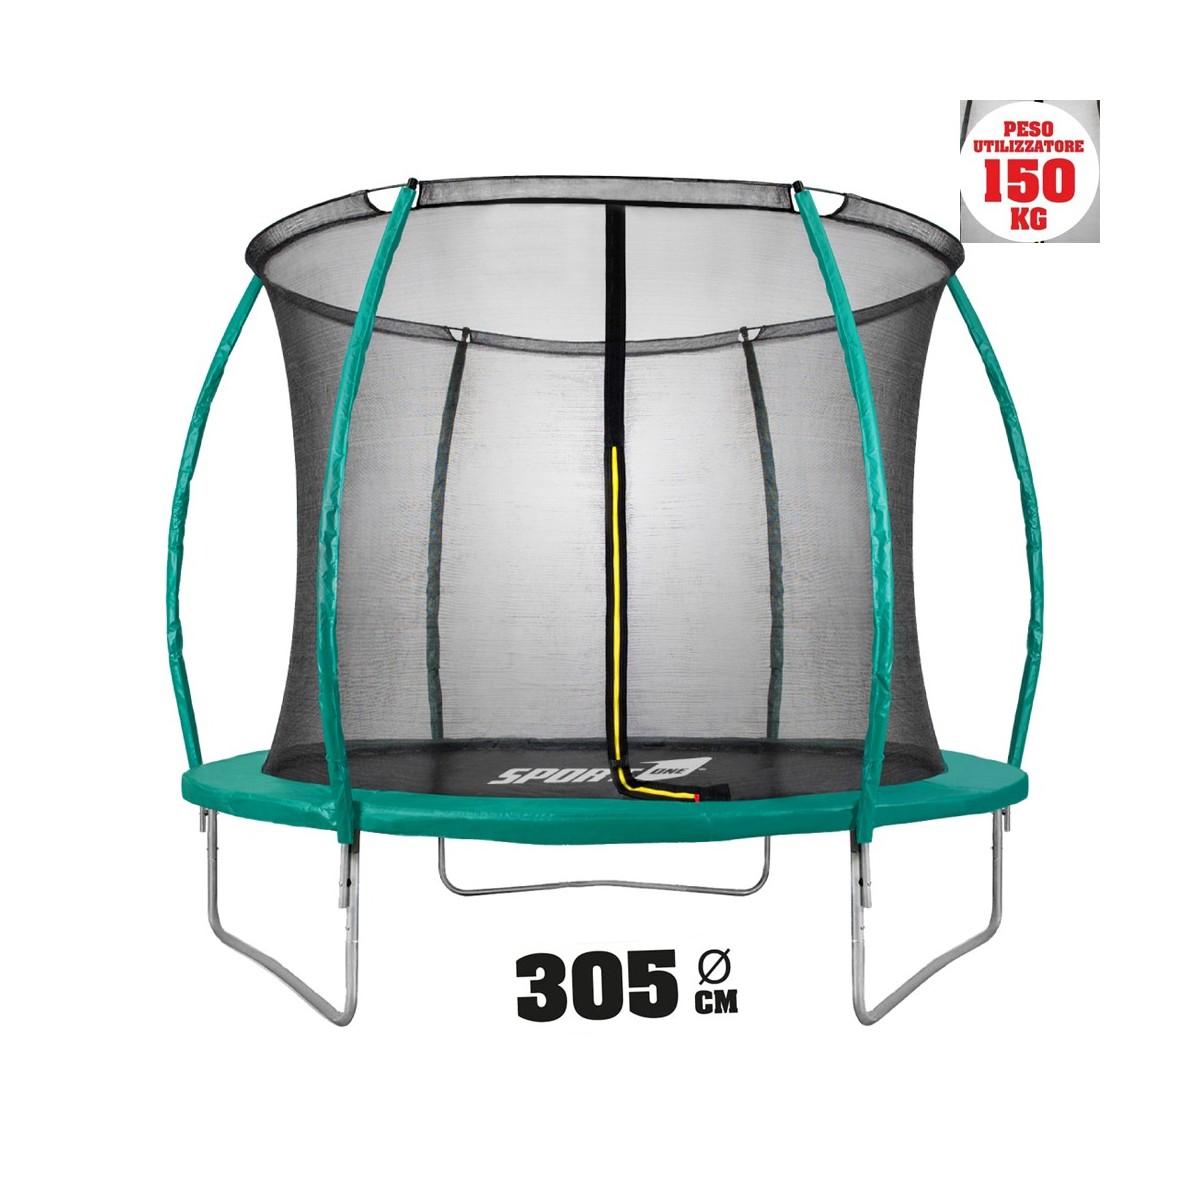 ULTRASPORT Trampolino rete rete di sicurezza rete di Ricambio per giardino trampolini Ø 305 